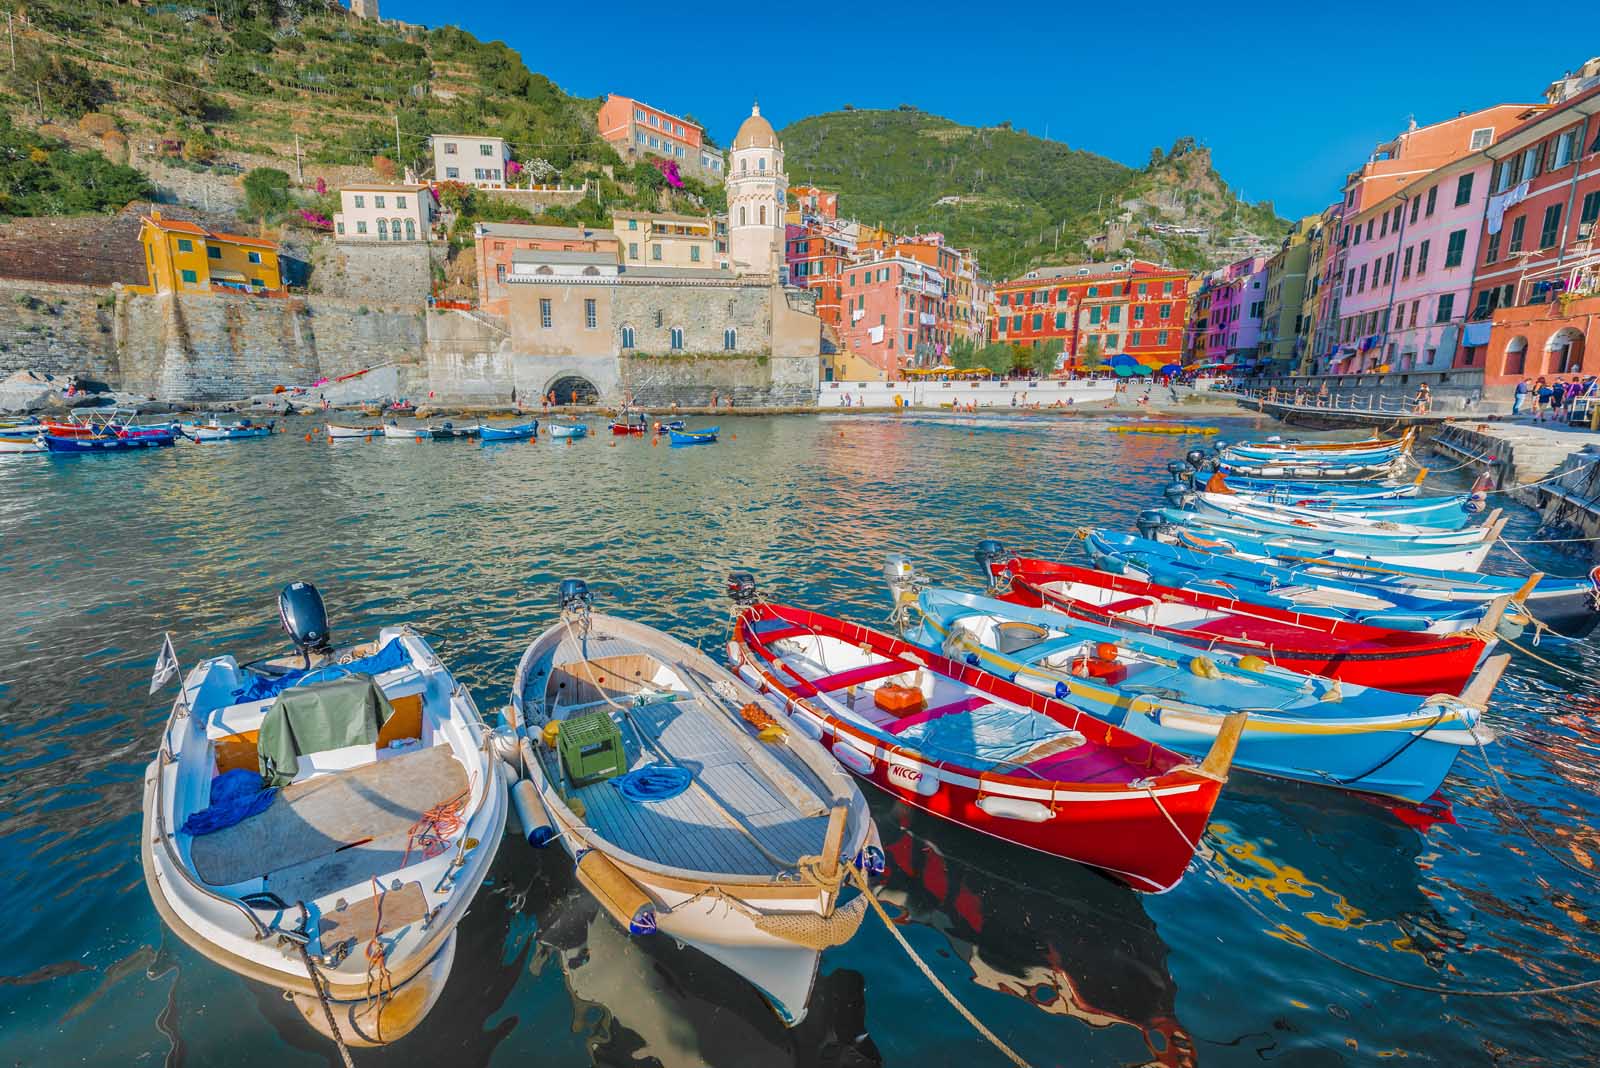 Cost in Cinque Terre vs Amalfi Coast